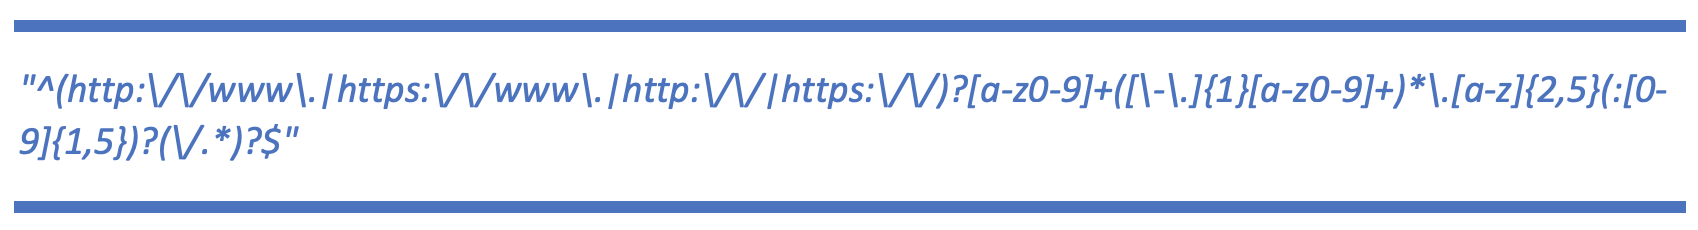 URL Input Format